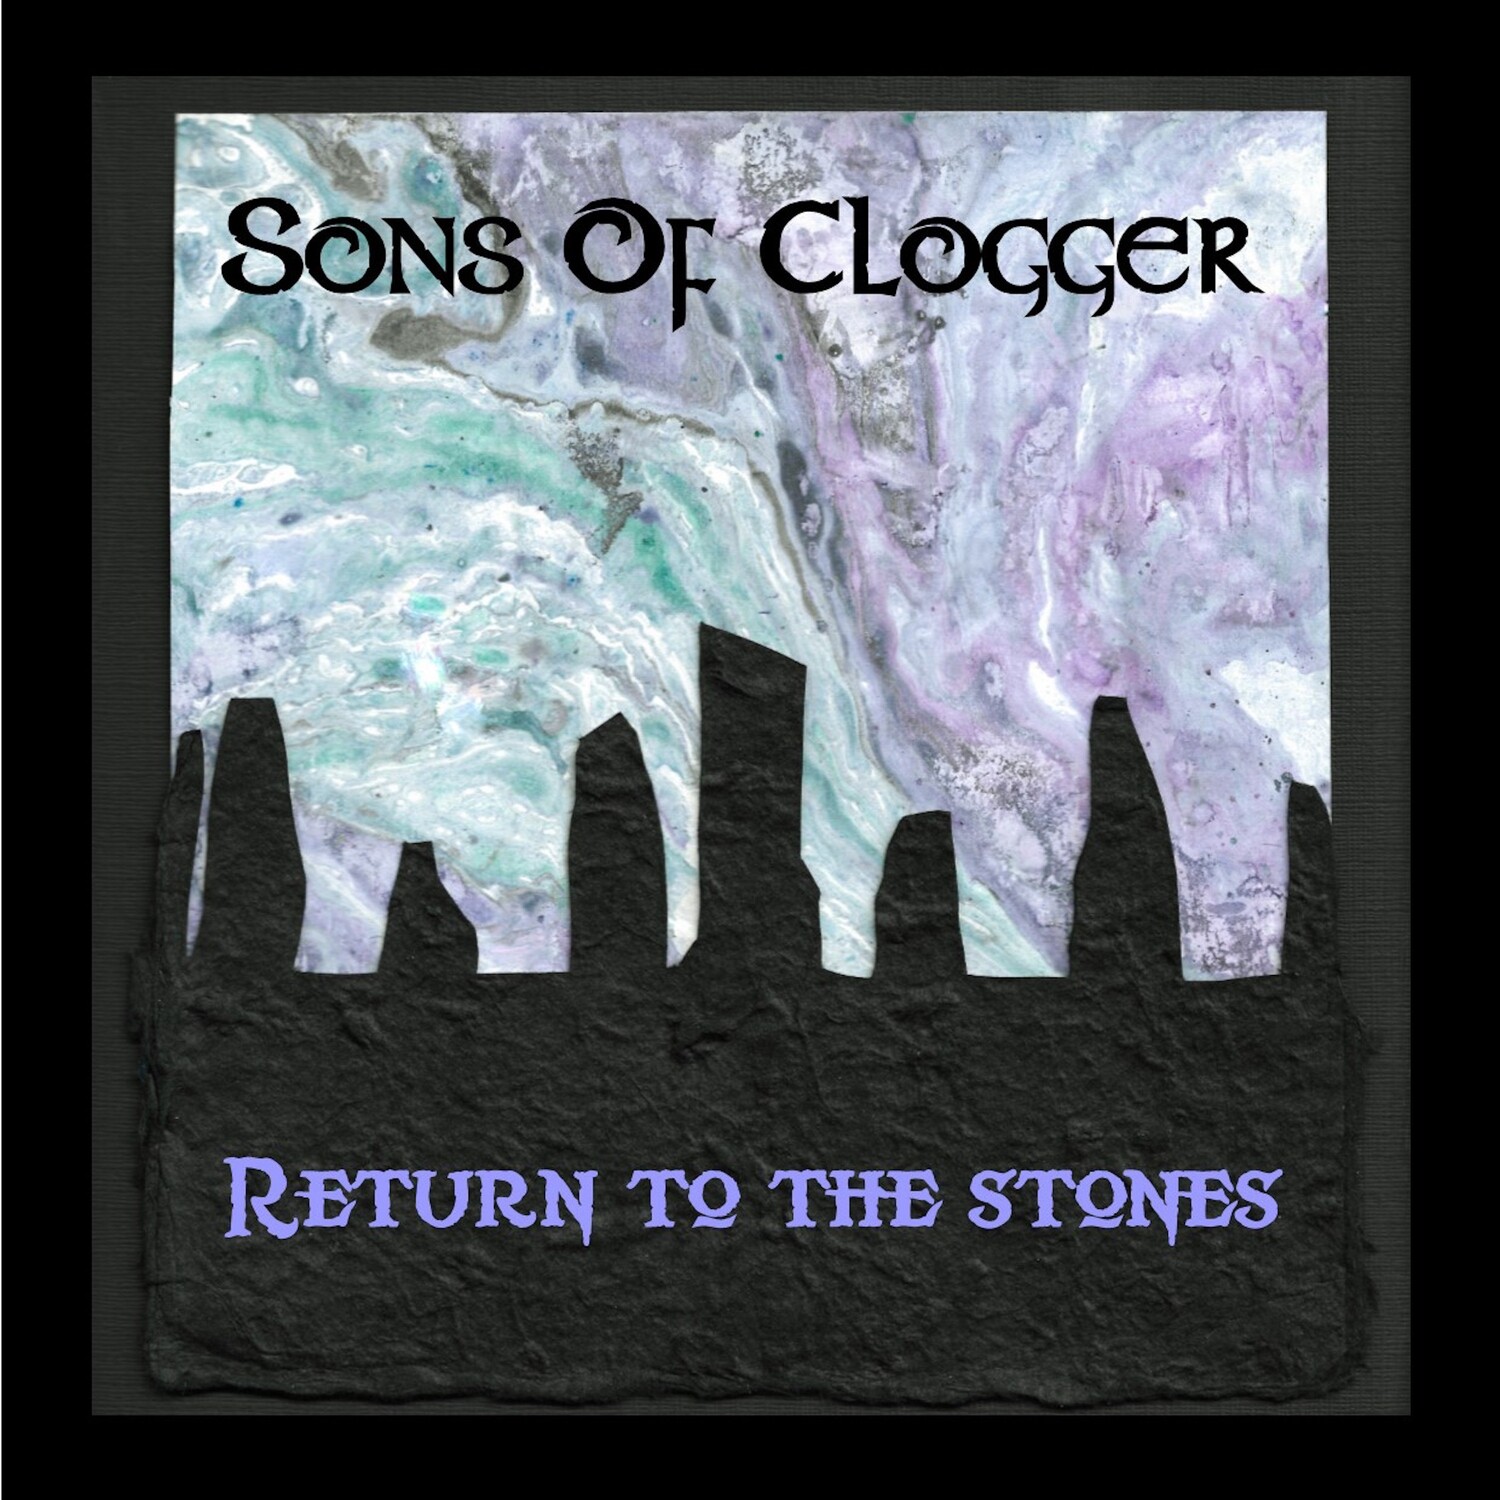 Return to the Stones (2019 album)